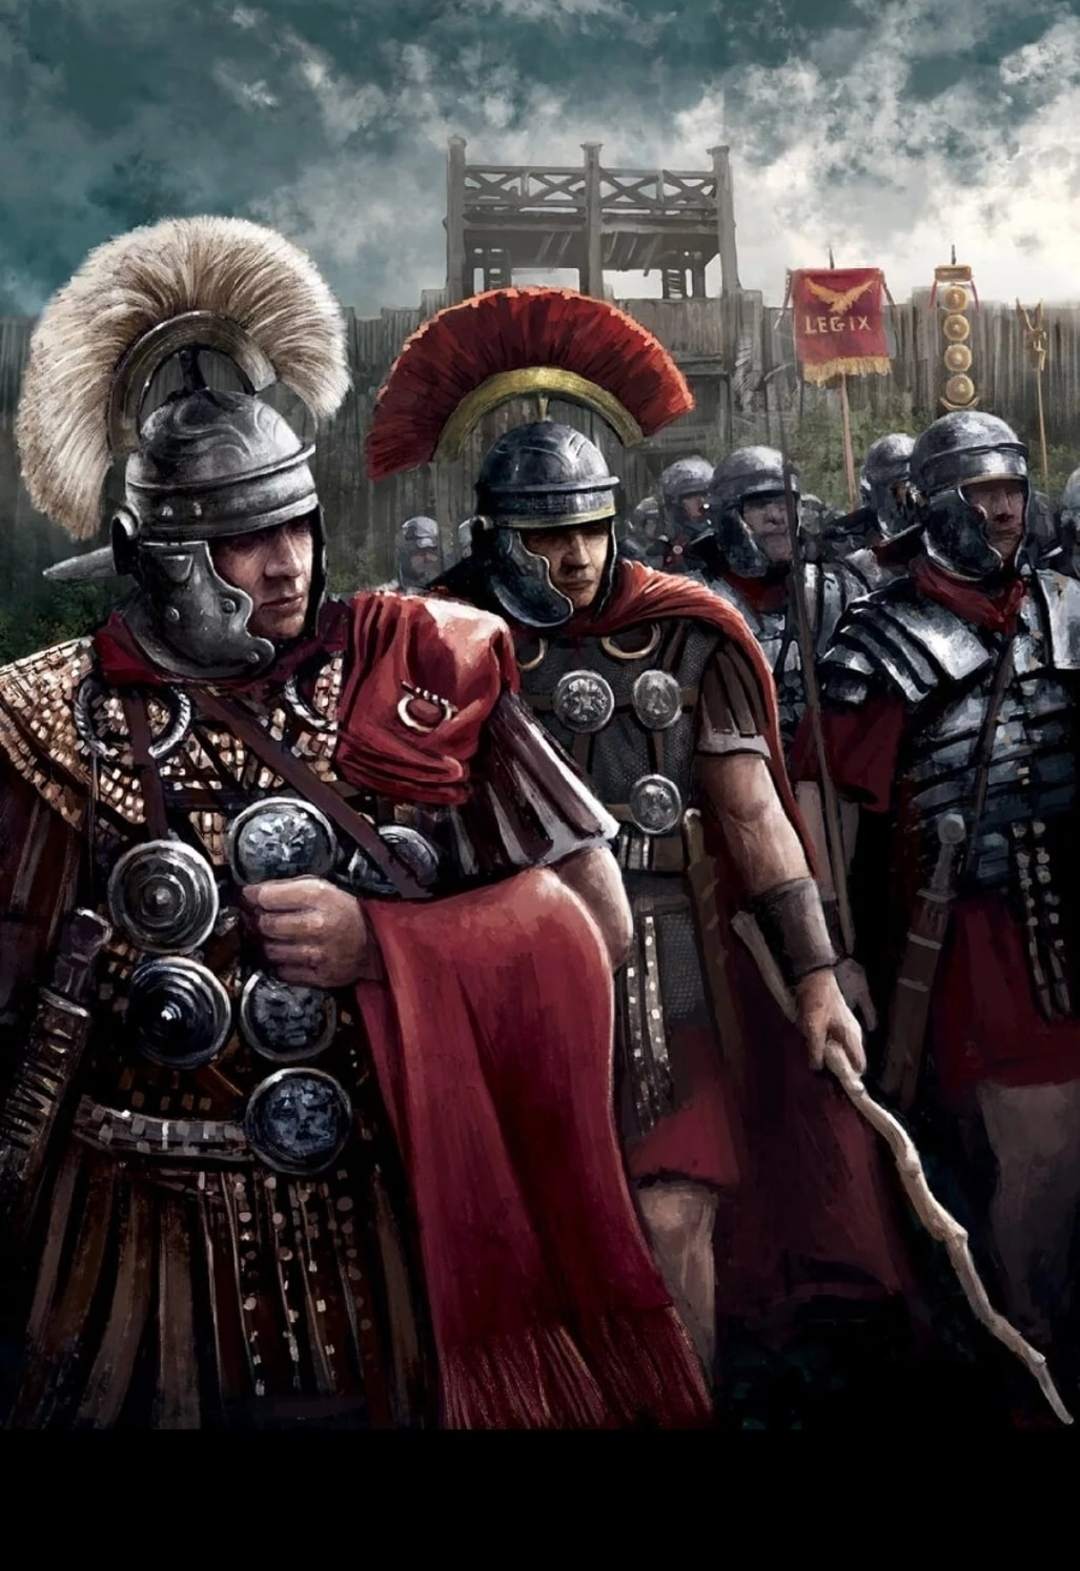 Войско римлян. Рим Легион Центурион. Римский легионер Центурион. Римский воин Центурион. Римская армия Центурион.